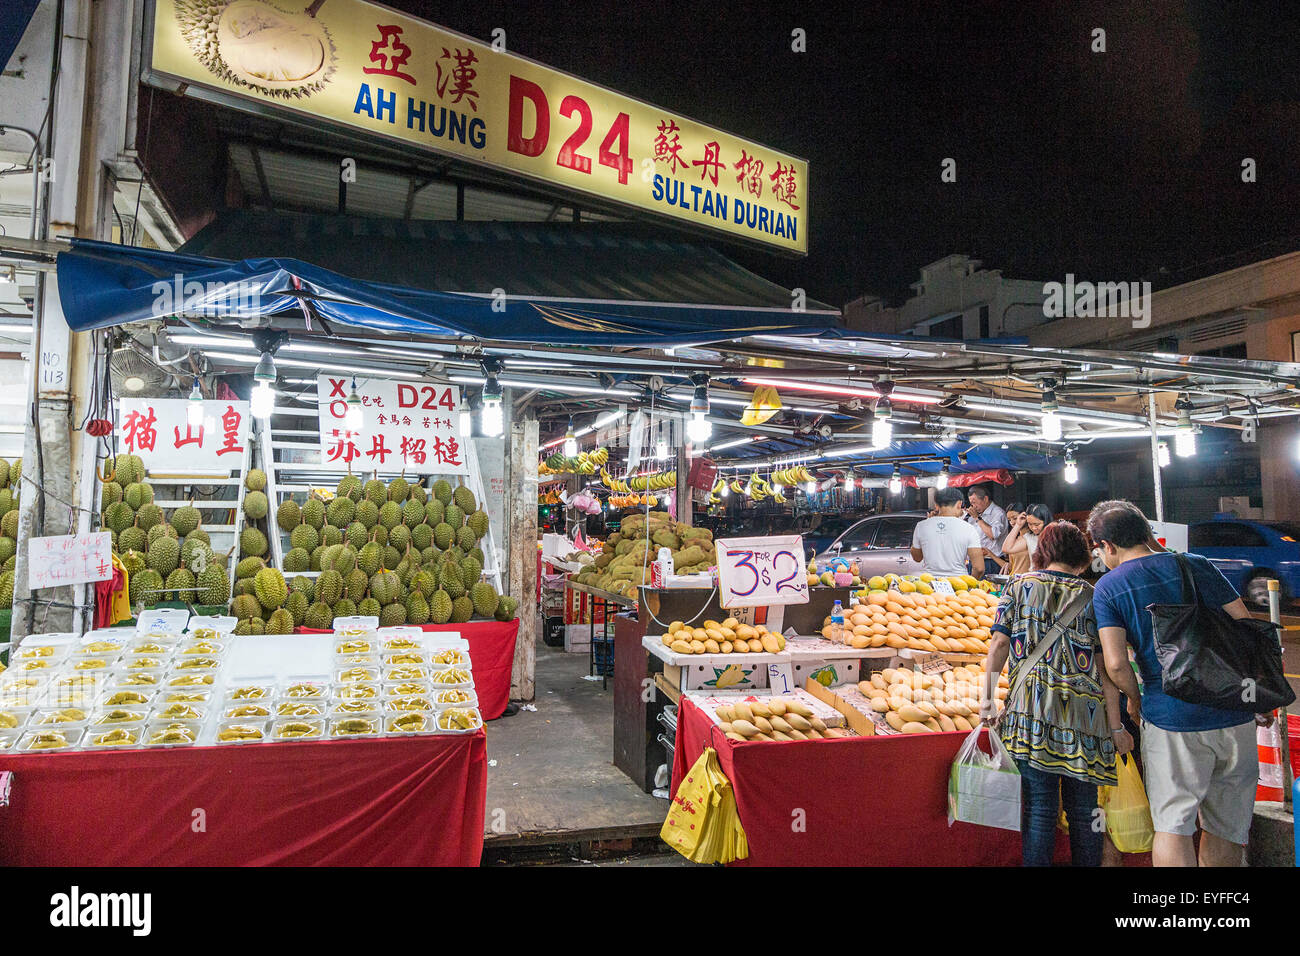 Durian fruit malodorant, célèbre pour la vente à un marché de nuit à Singapour. La douce odeur de malade ce fruit est si intense, il Banque D'Images